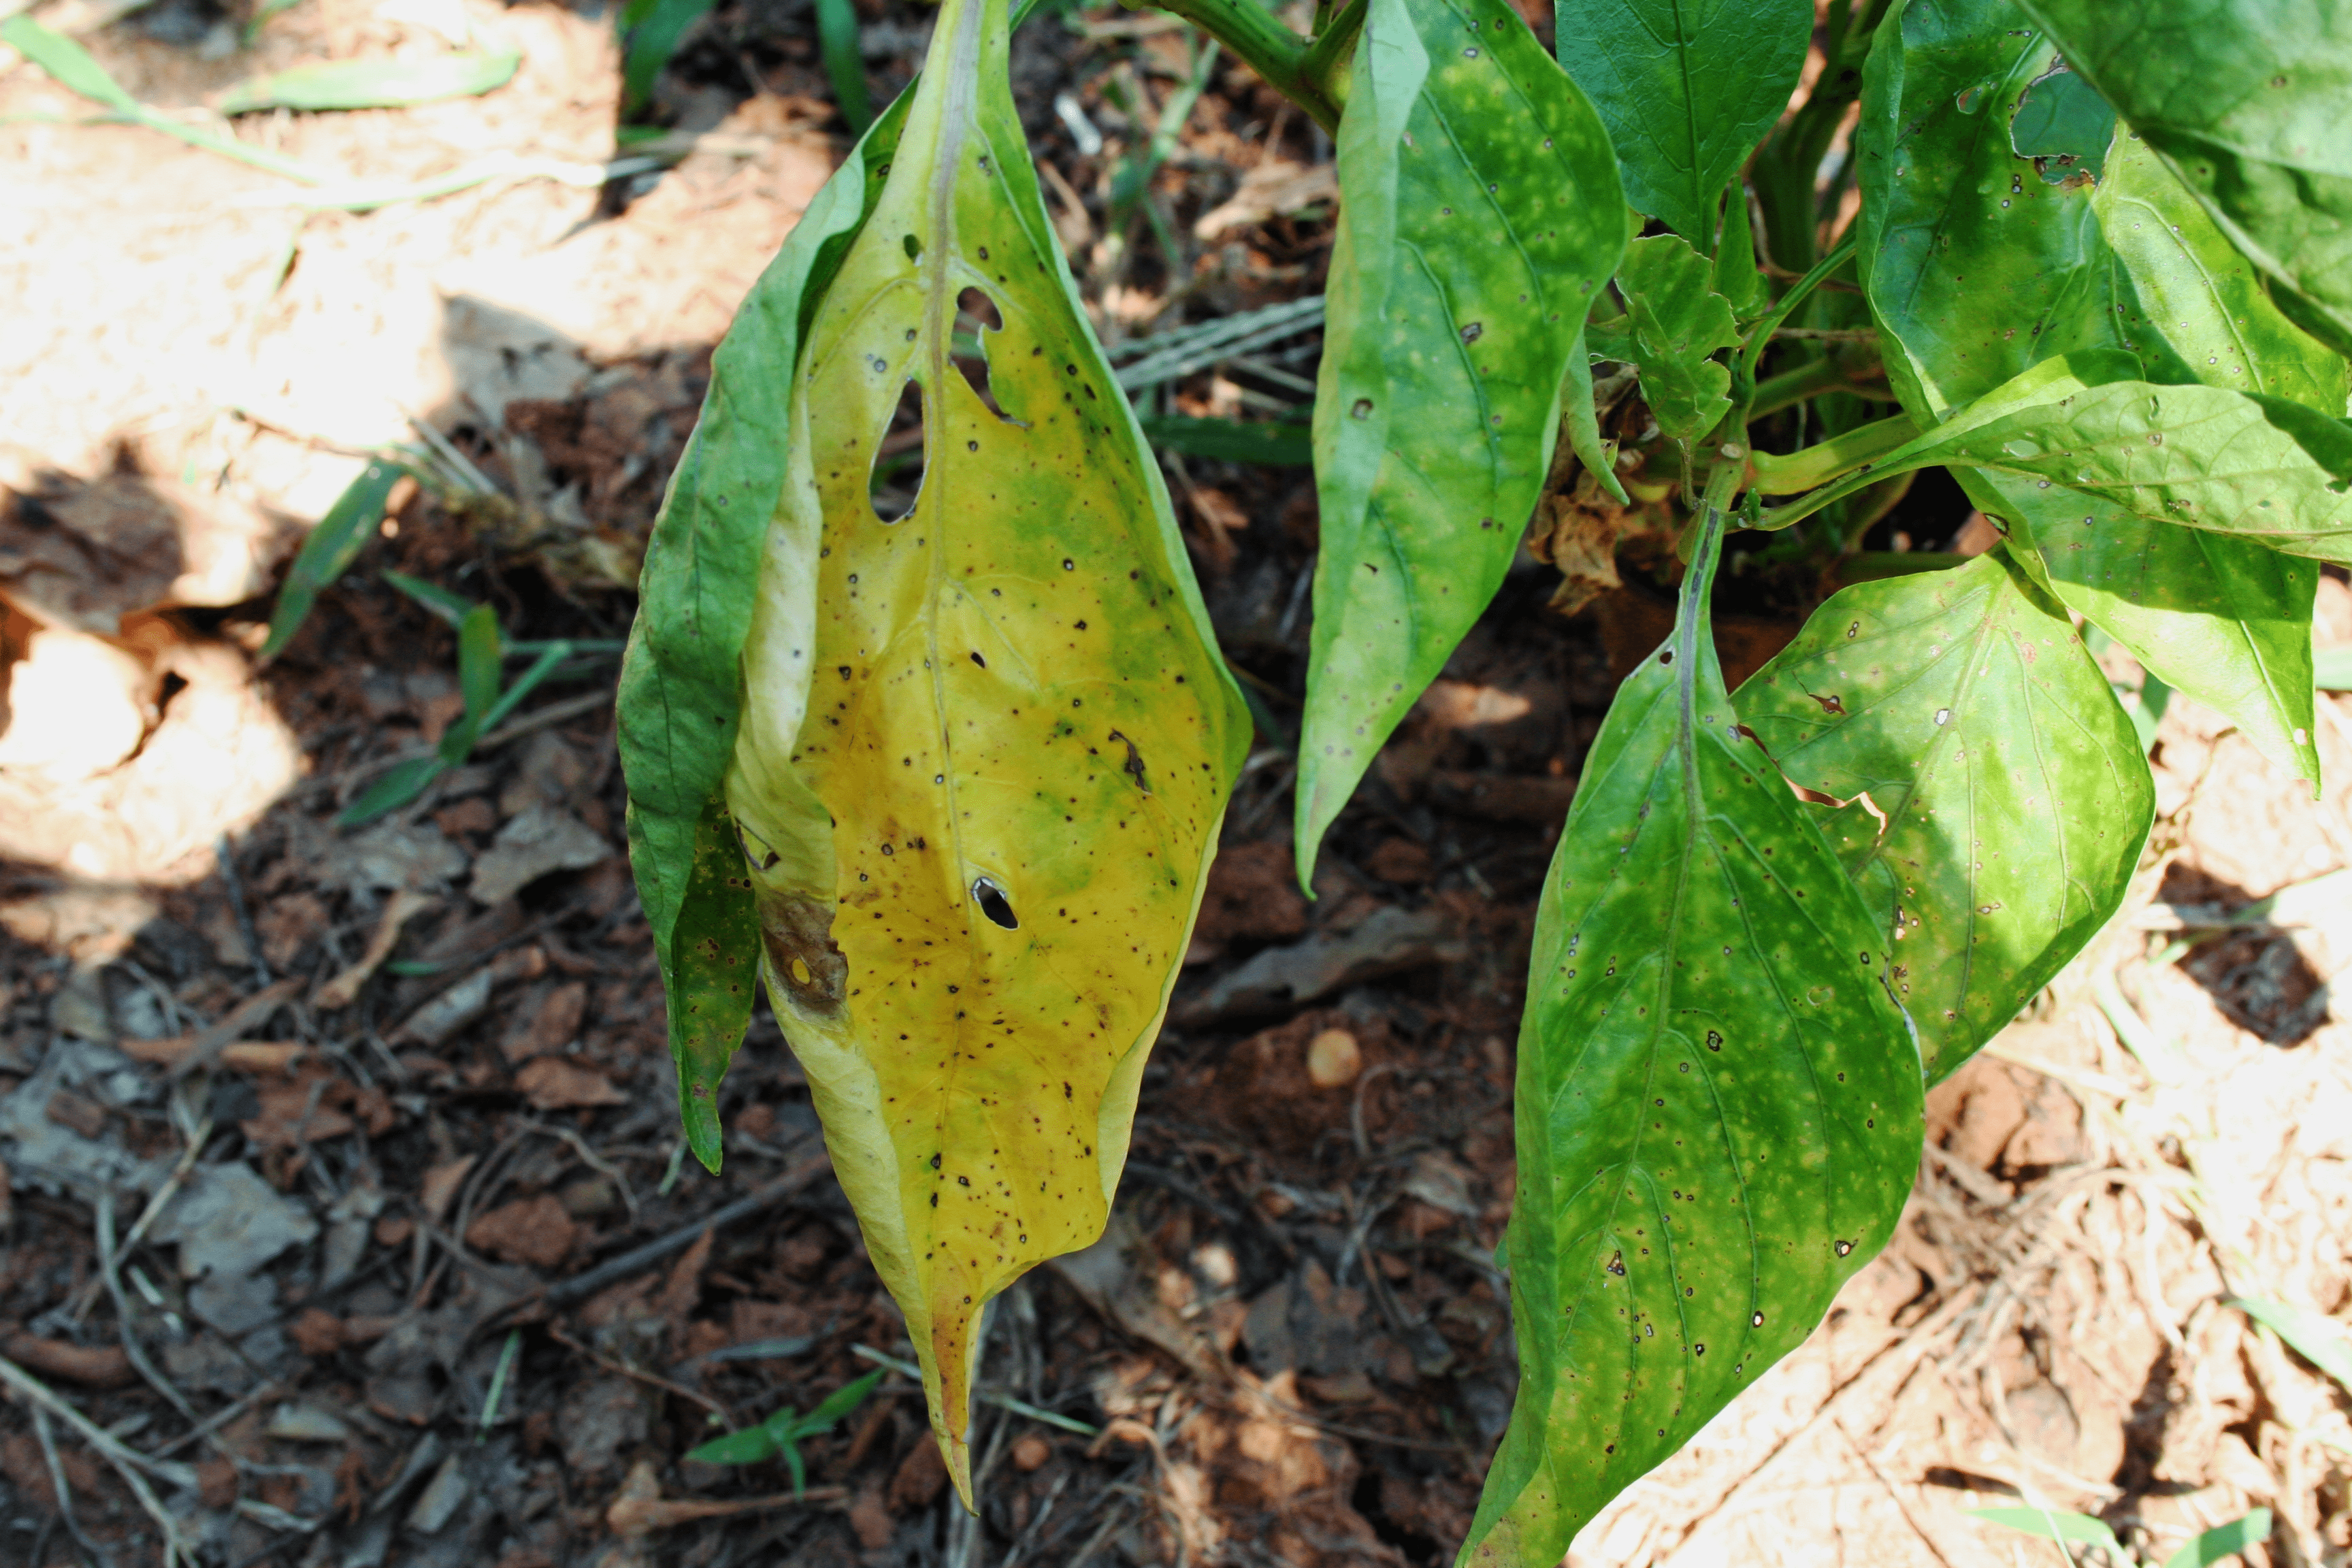  Las hojas de la planta del pimiento se vuelven amarillas